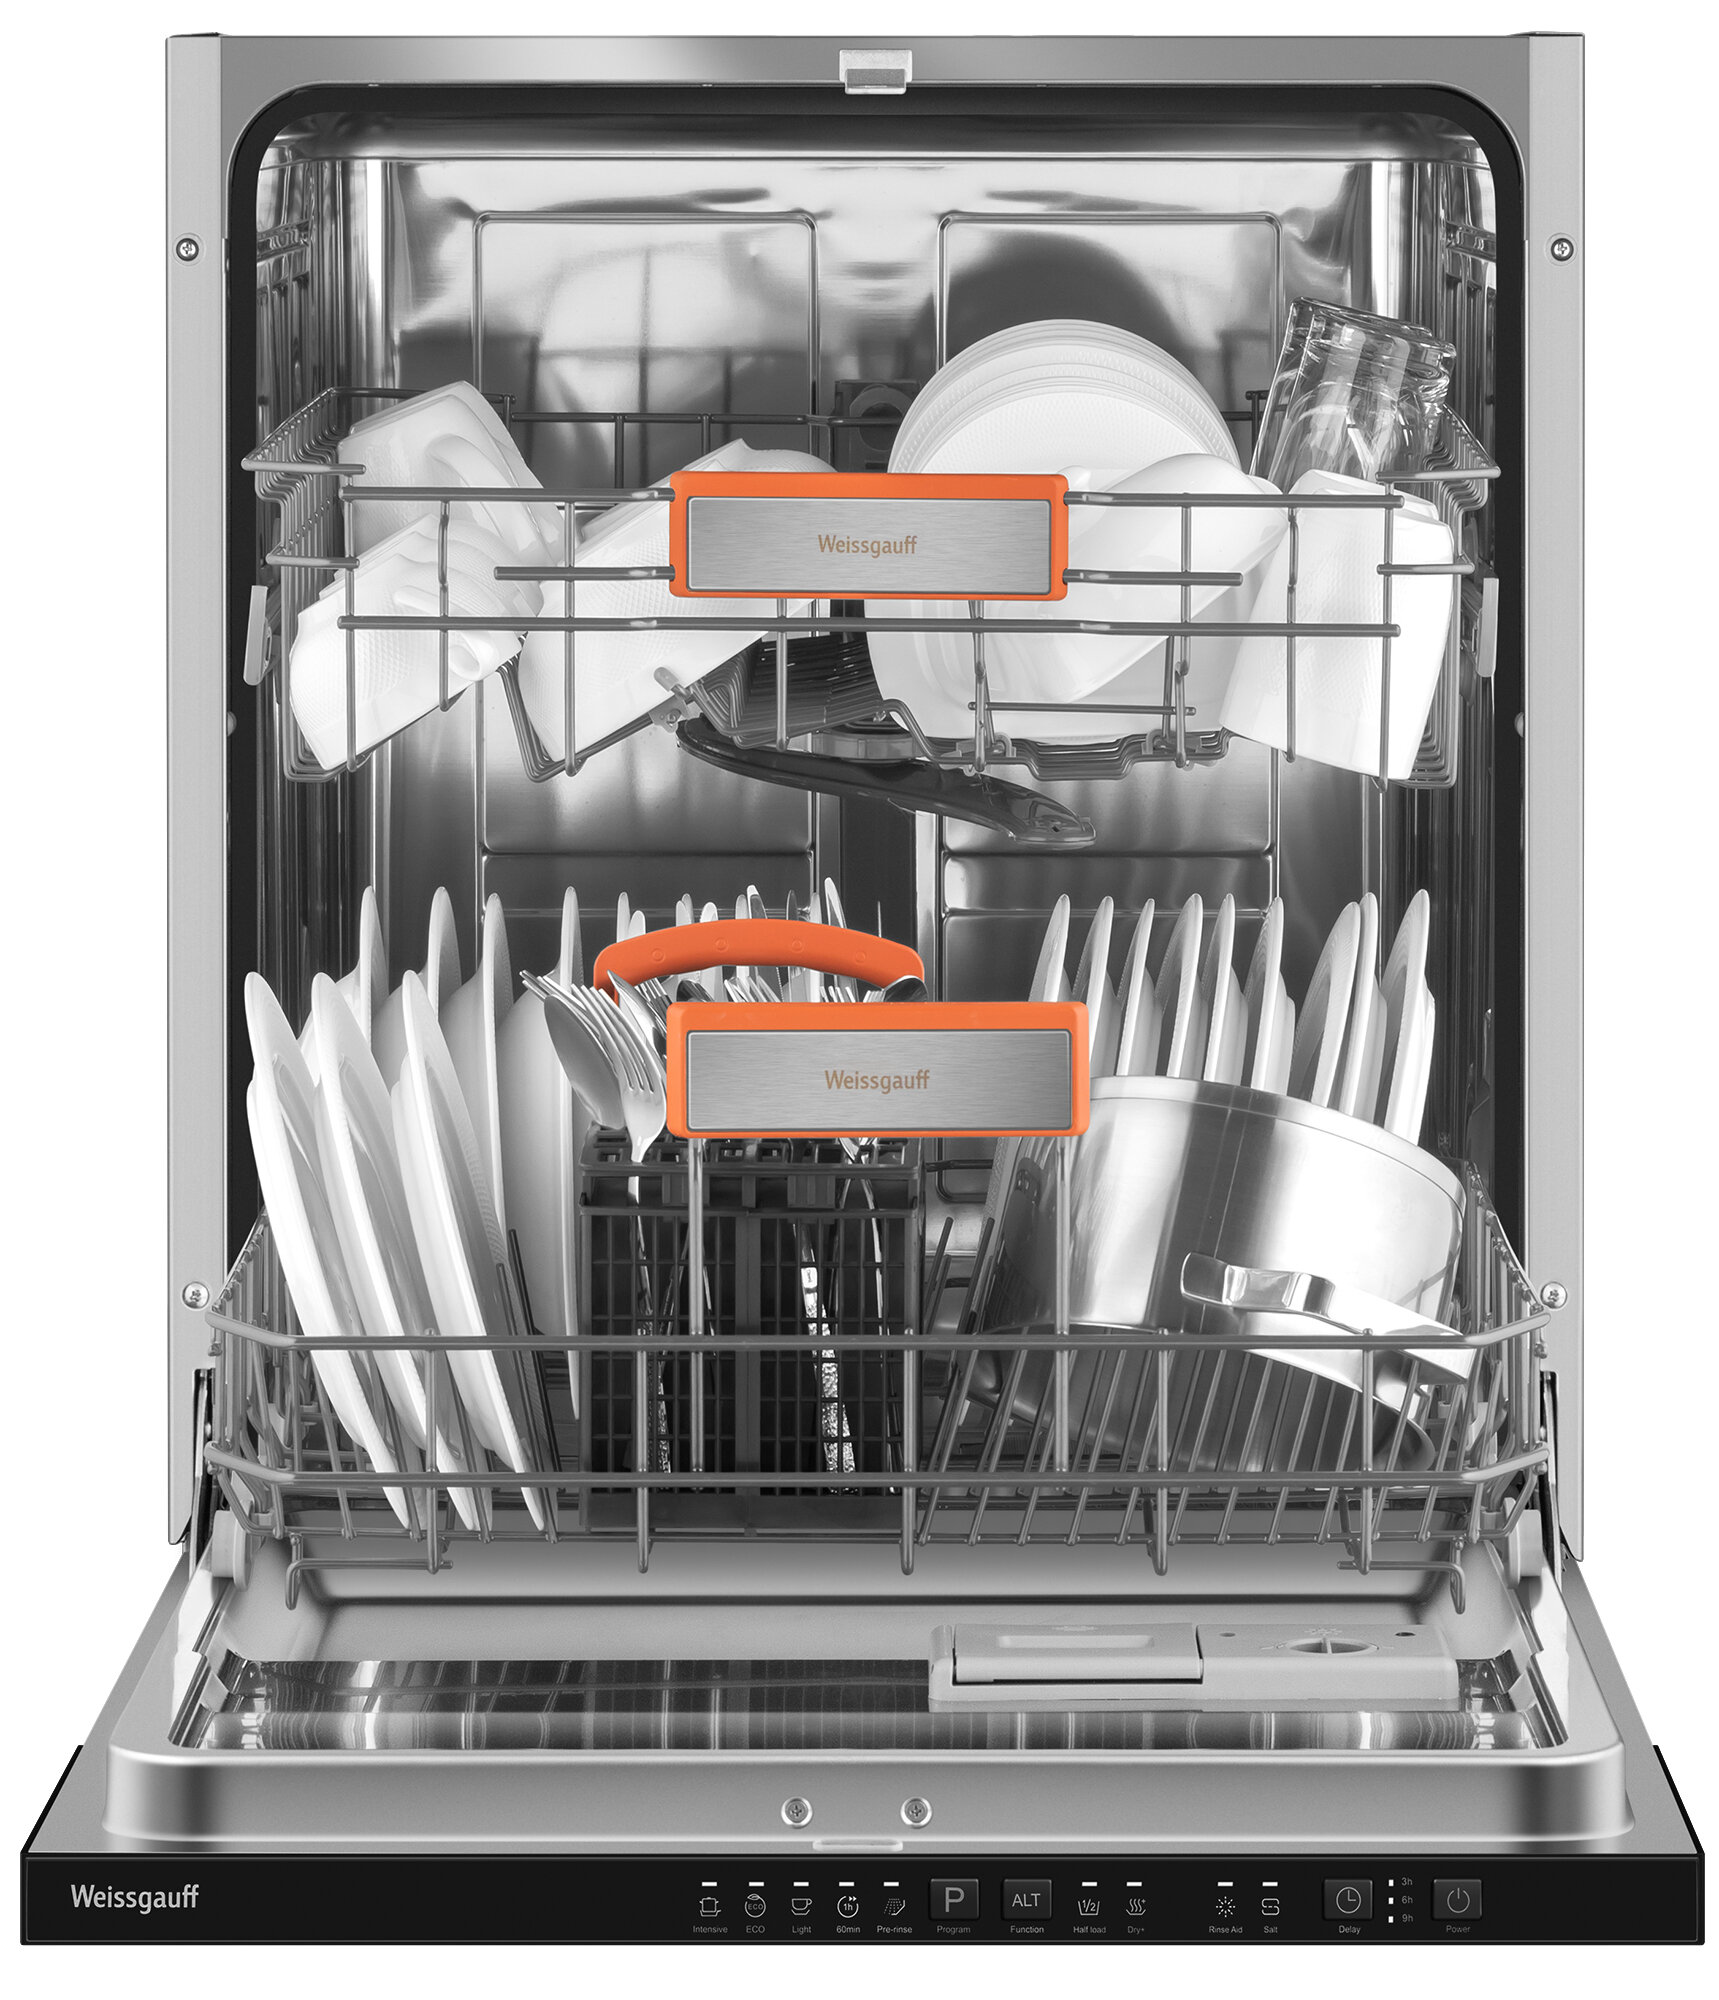 Встраиваемая посудомоечная машина с лучом на полу Weissgauff BDW 6025 Infolight,3 года гарантии,12 комплектов посуды, 5 программ, дополнительная сушка, половинная загрузка, индикаторы соли и ополаскивателя, энергоэффективность A++, защита от протечек